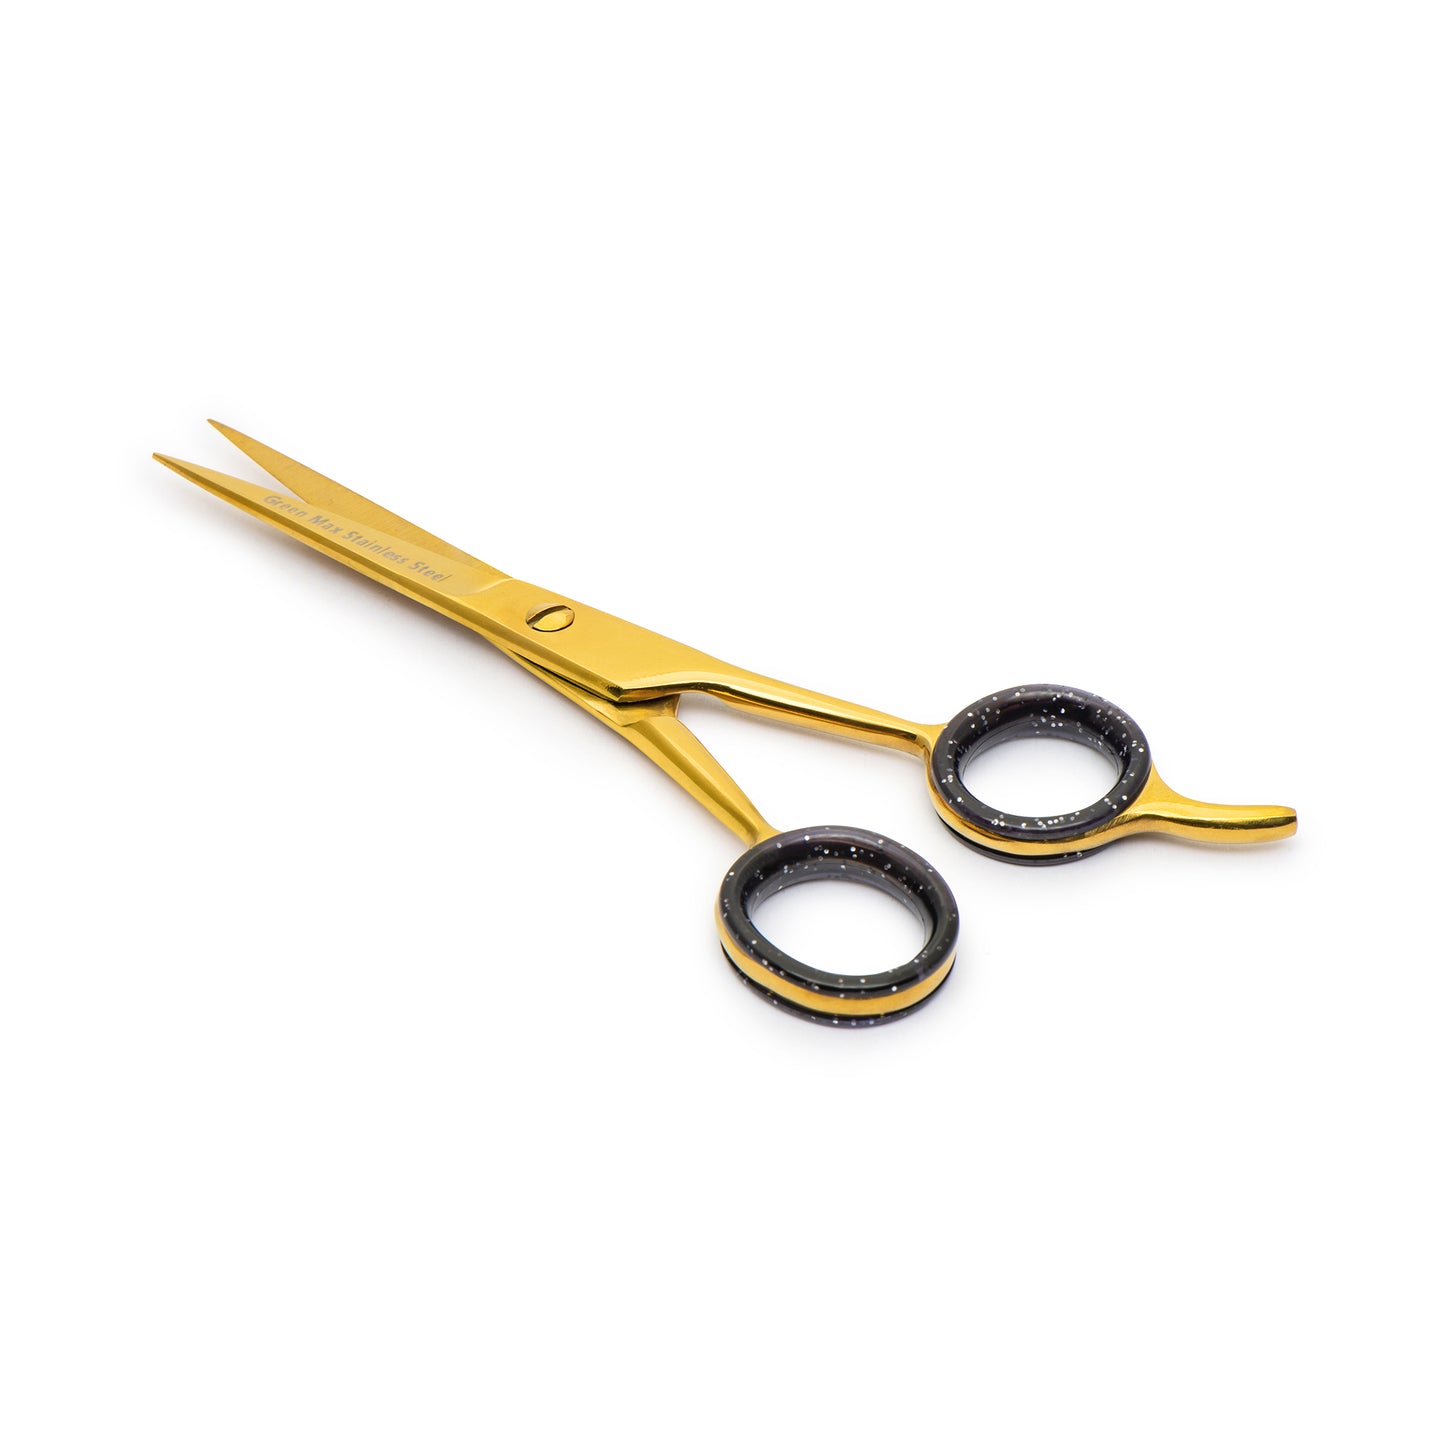 Tesoura de corte de cabelo, tesoura de barbeiro profissional de ponta navalha. (OURO) 5,5 pol.